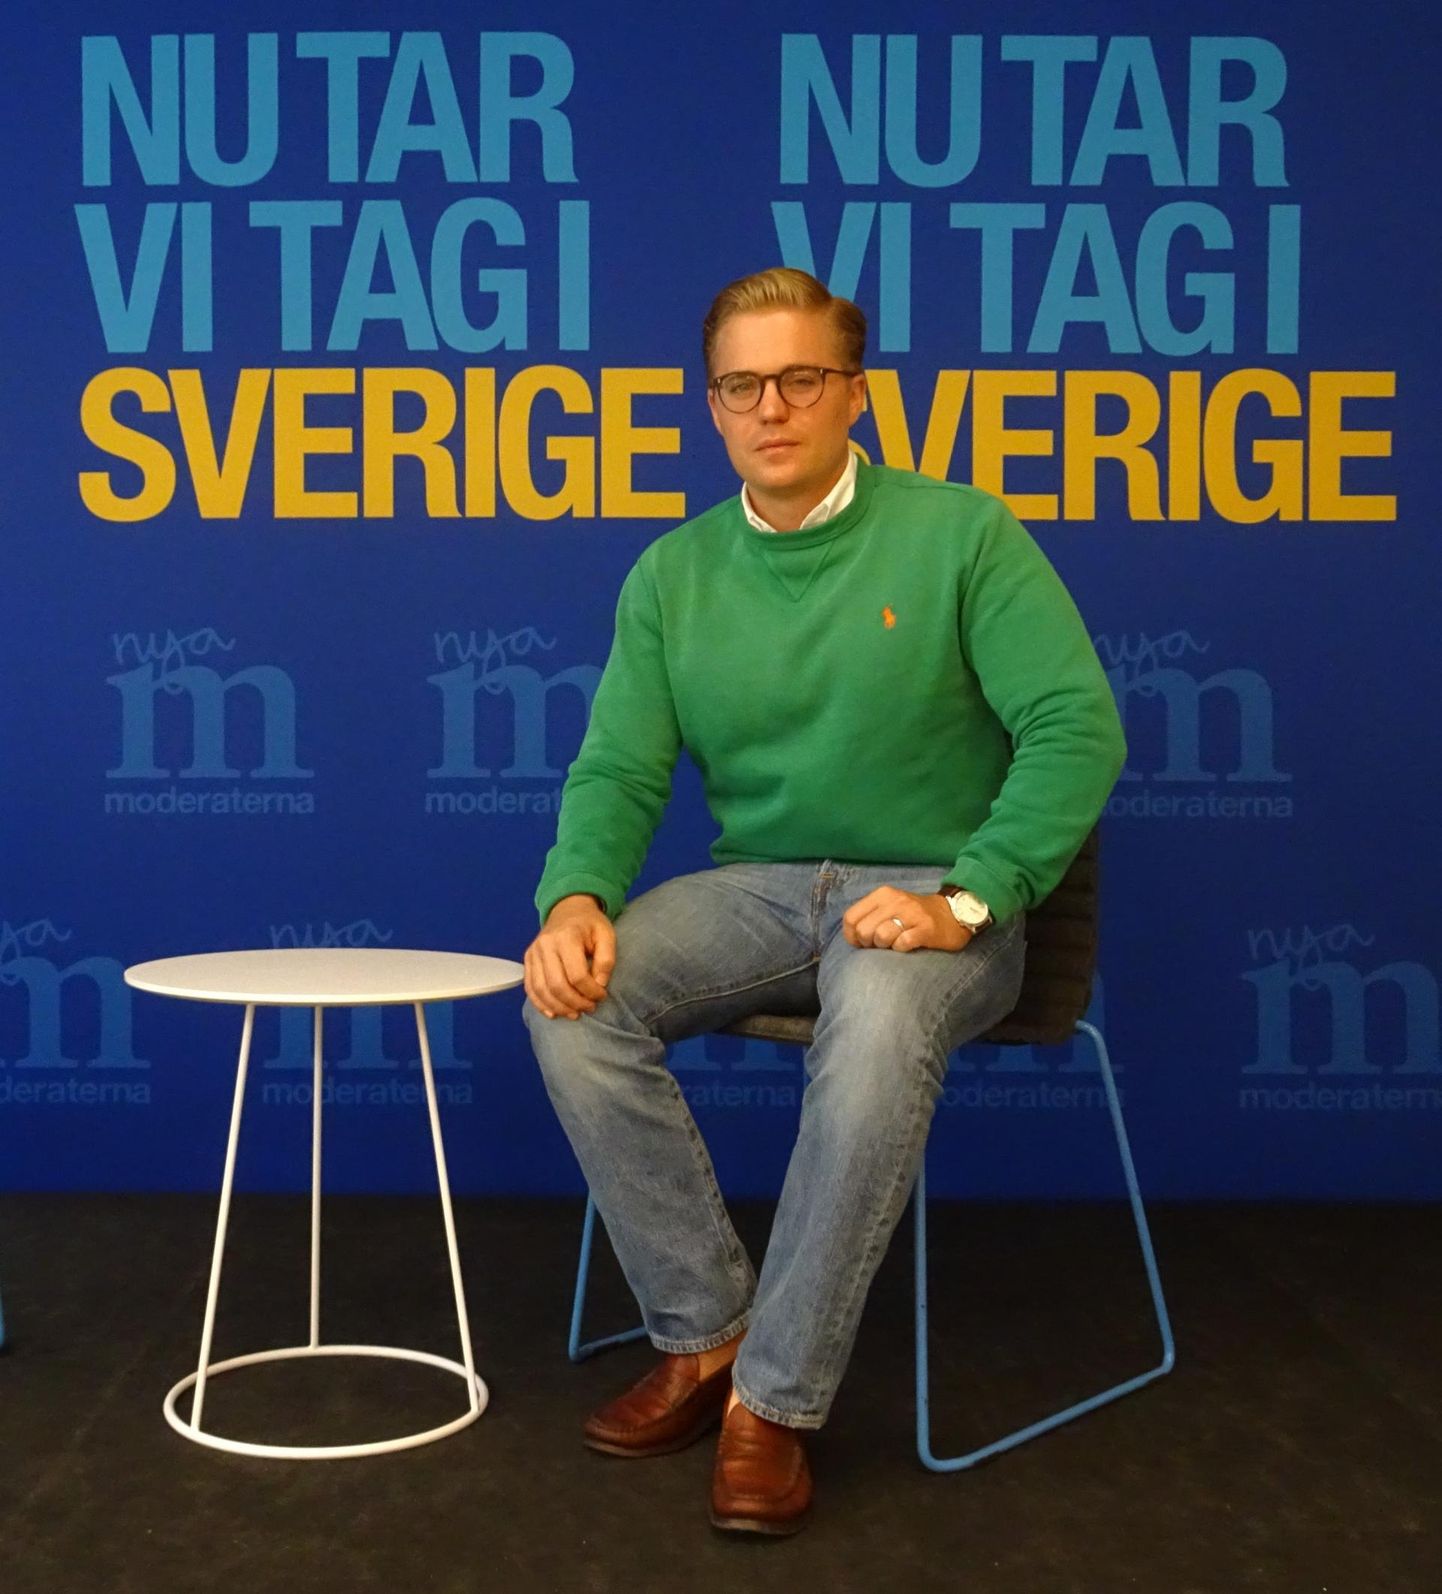 Rootsi moderaatide strateegiajuht Per Nilsson partei kontori pressiruumis Stockholmi kesklinnas. Tema taustal kuulutab tänavuste valimiste hüüdlause, et partei lubab Rootsis korra majja lüüa. FOTO: Berit Nuka